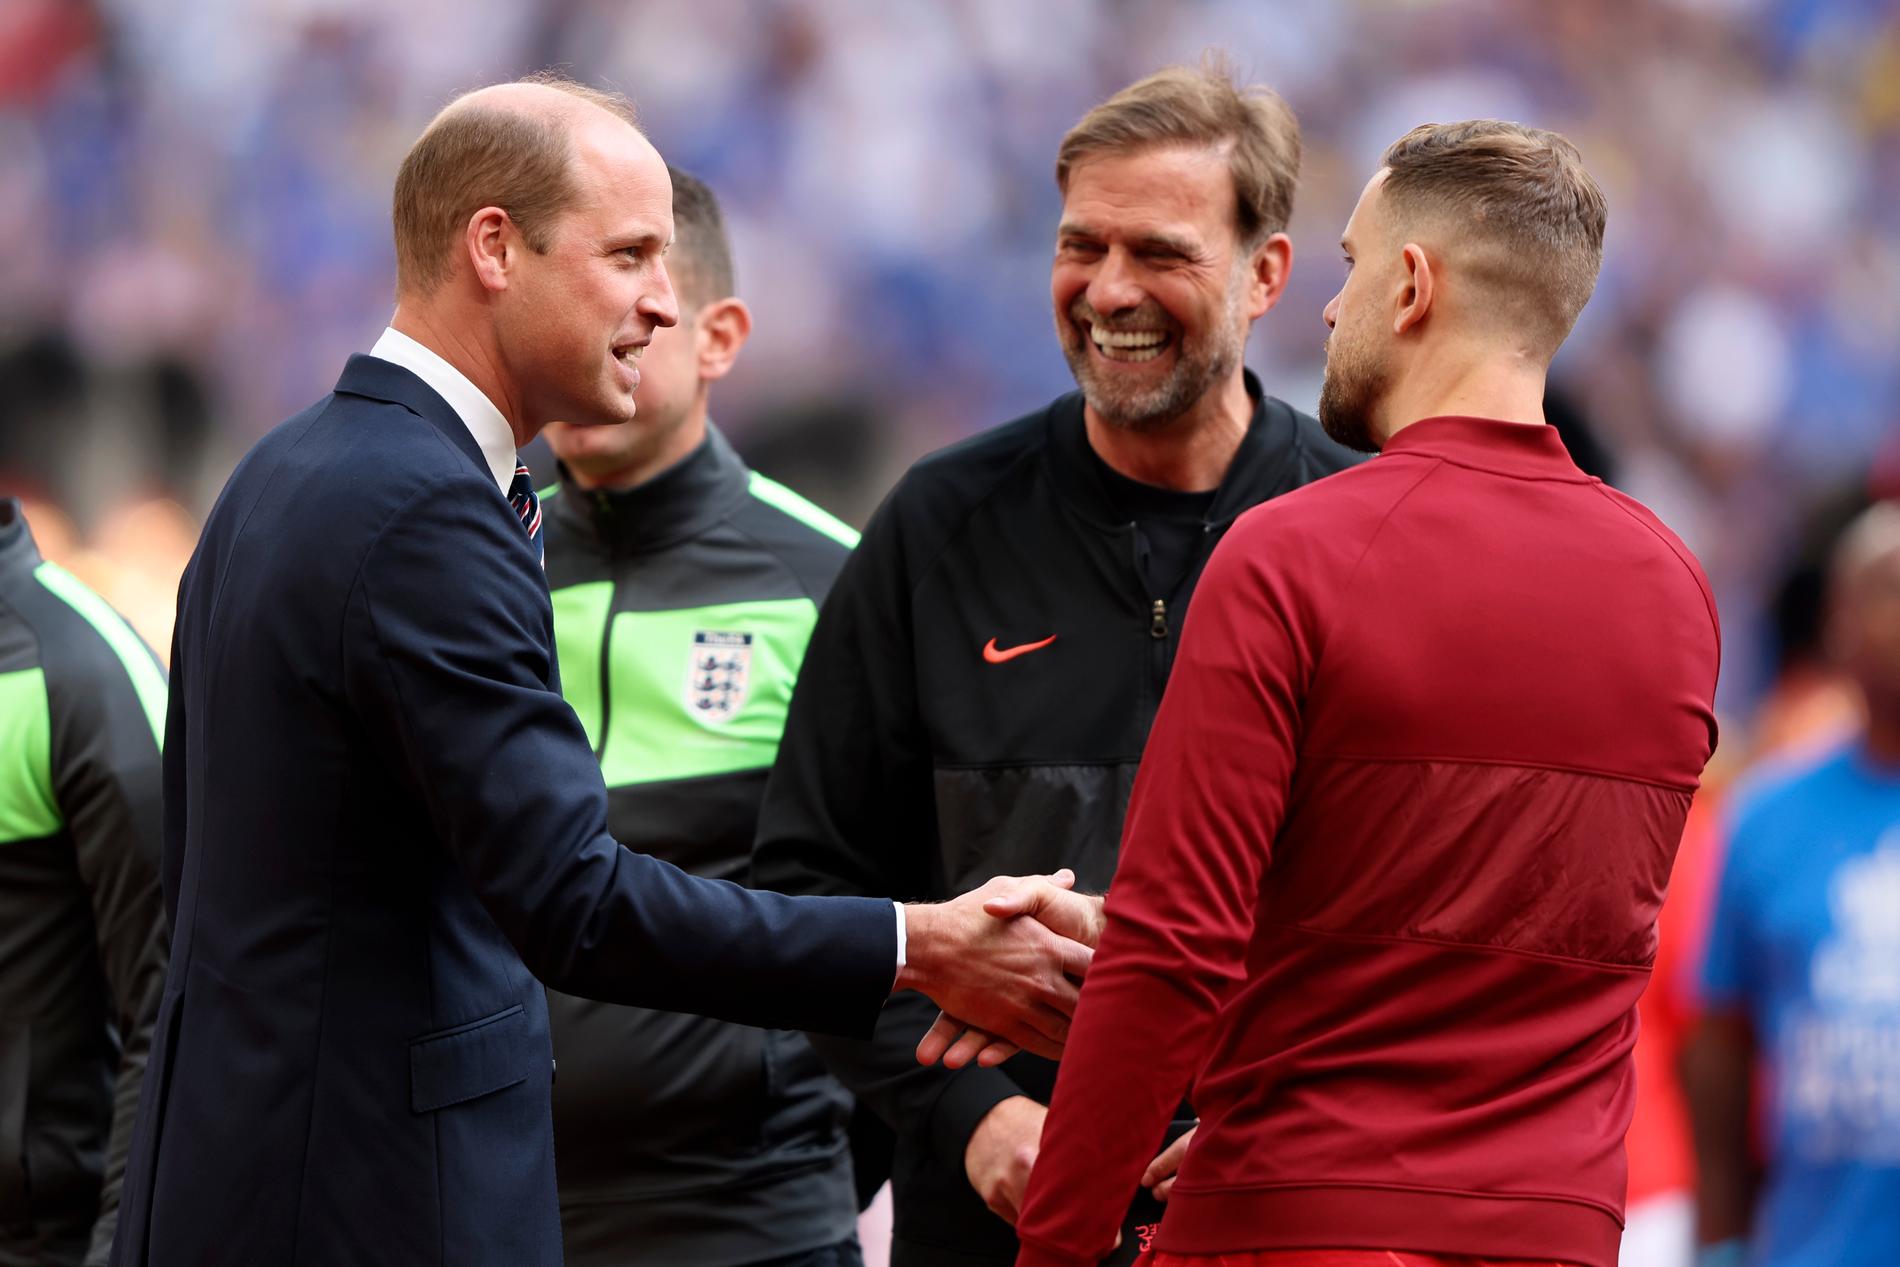 Prins William möter Jürgen Klopp på Wembleys gräsmatta.